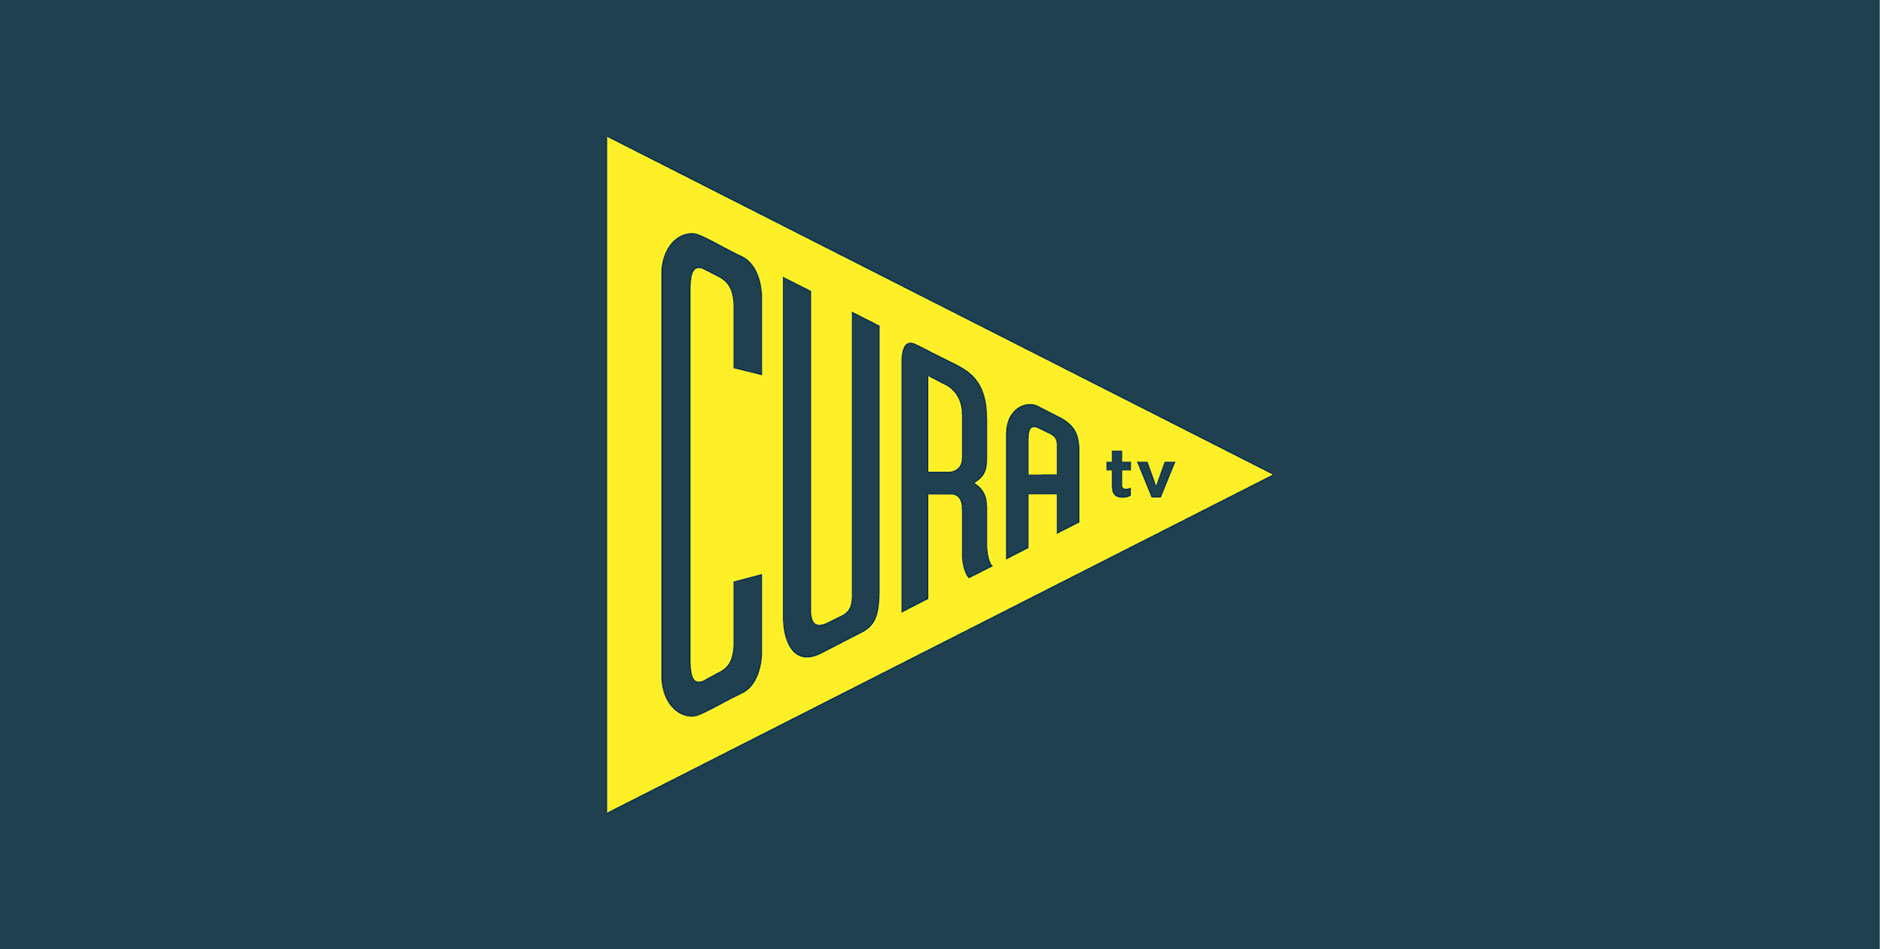 Cura TV branding